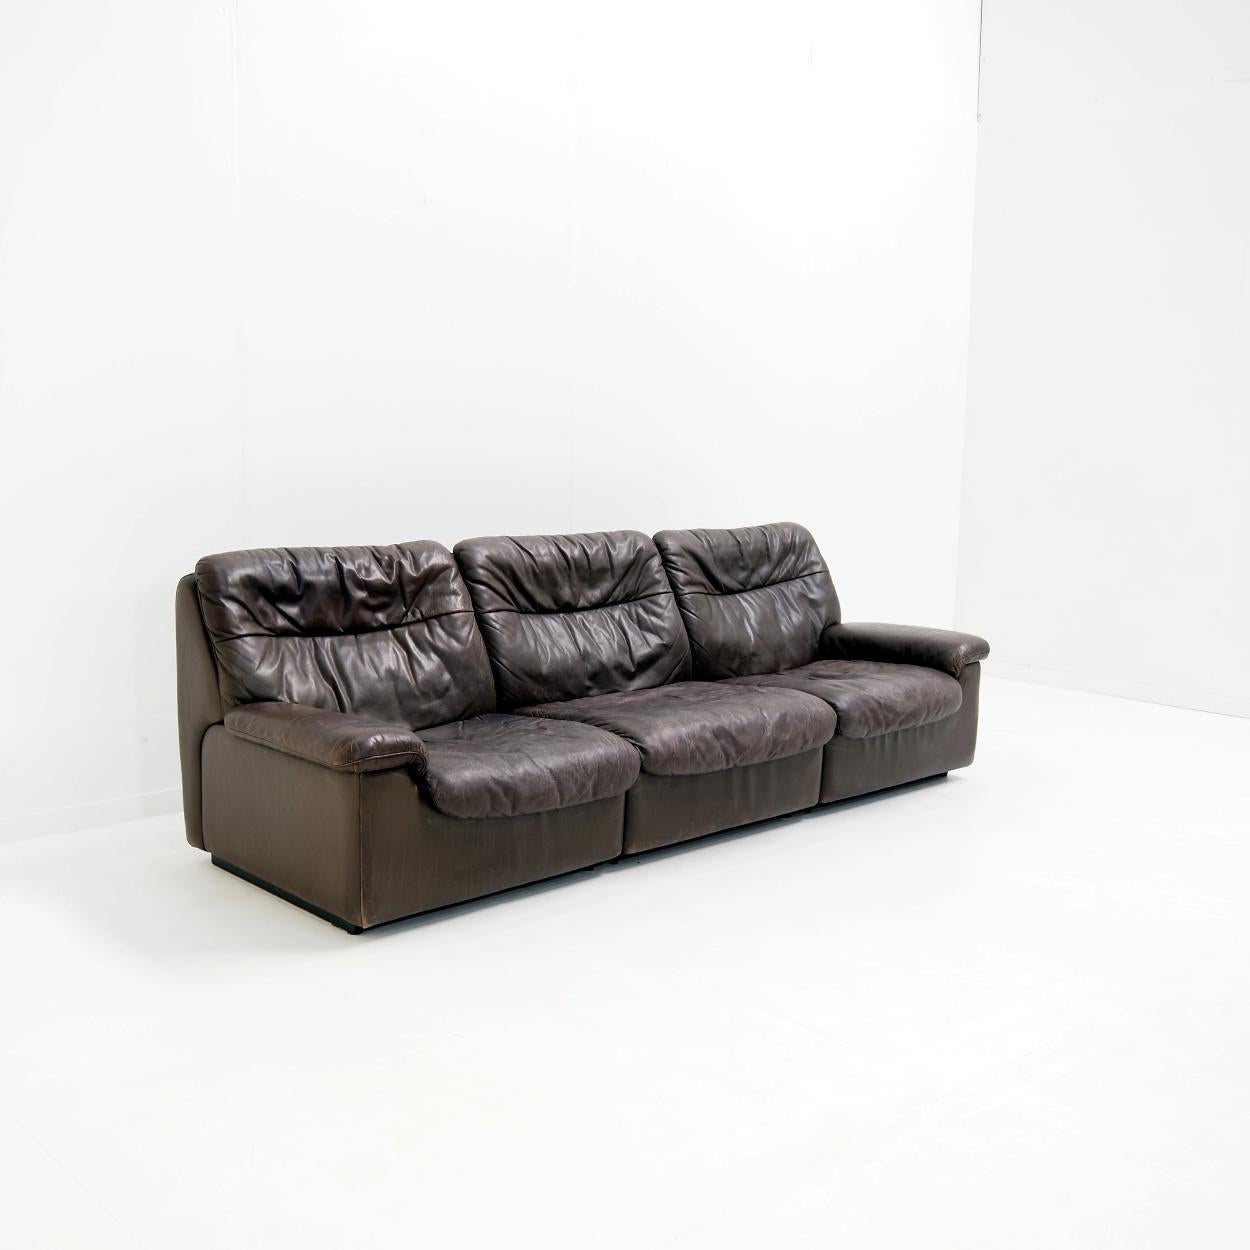 Das in den 1970er Jahren von Carl Larsson entworfene, flippige Sofa De Sede DS-66 mit schönen Gebrauchsspuren ist ein echtes Sitzvergnügen. Das weiche Leder und die weichen Kissen sorgen für ein sehr entspanntes Sitzerlebnis, bei dem Sie wirklich